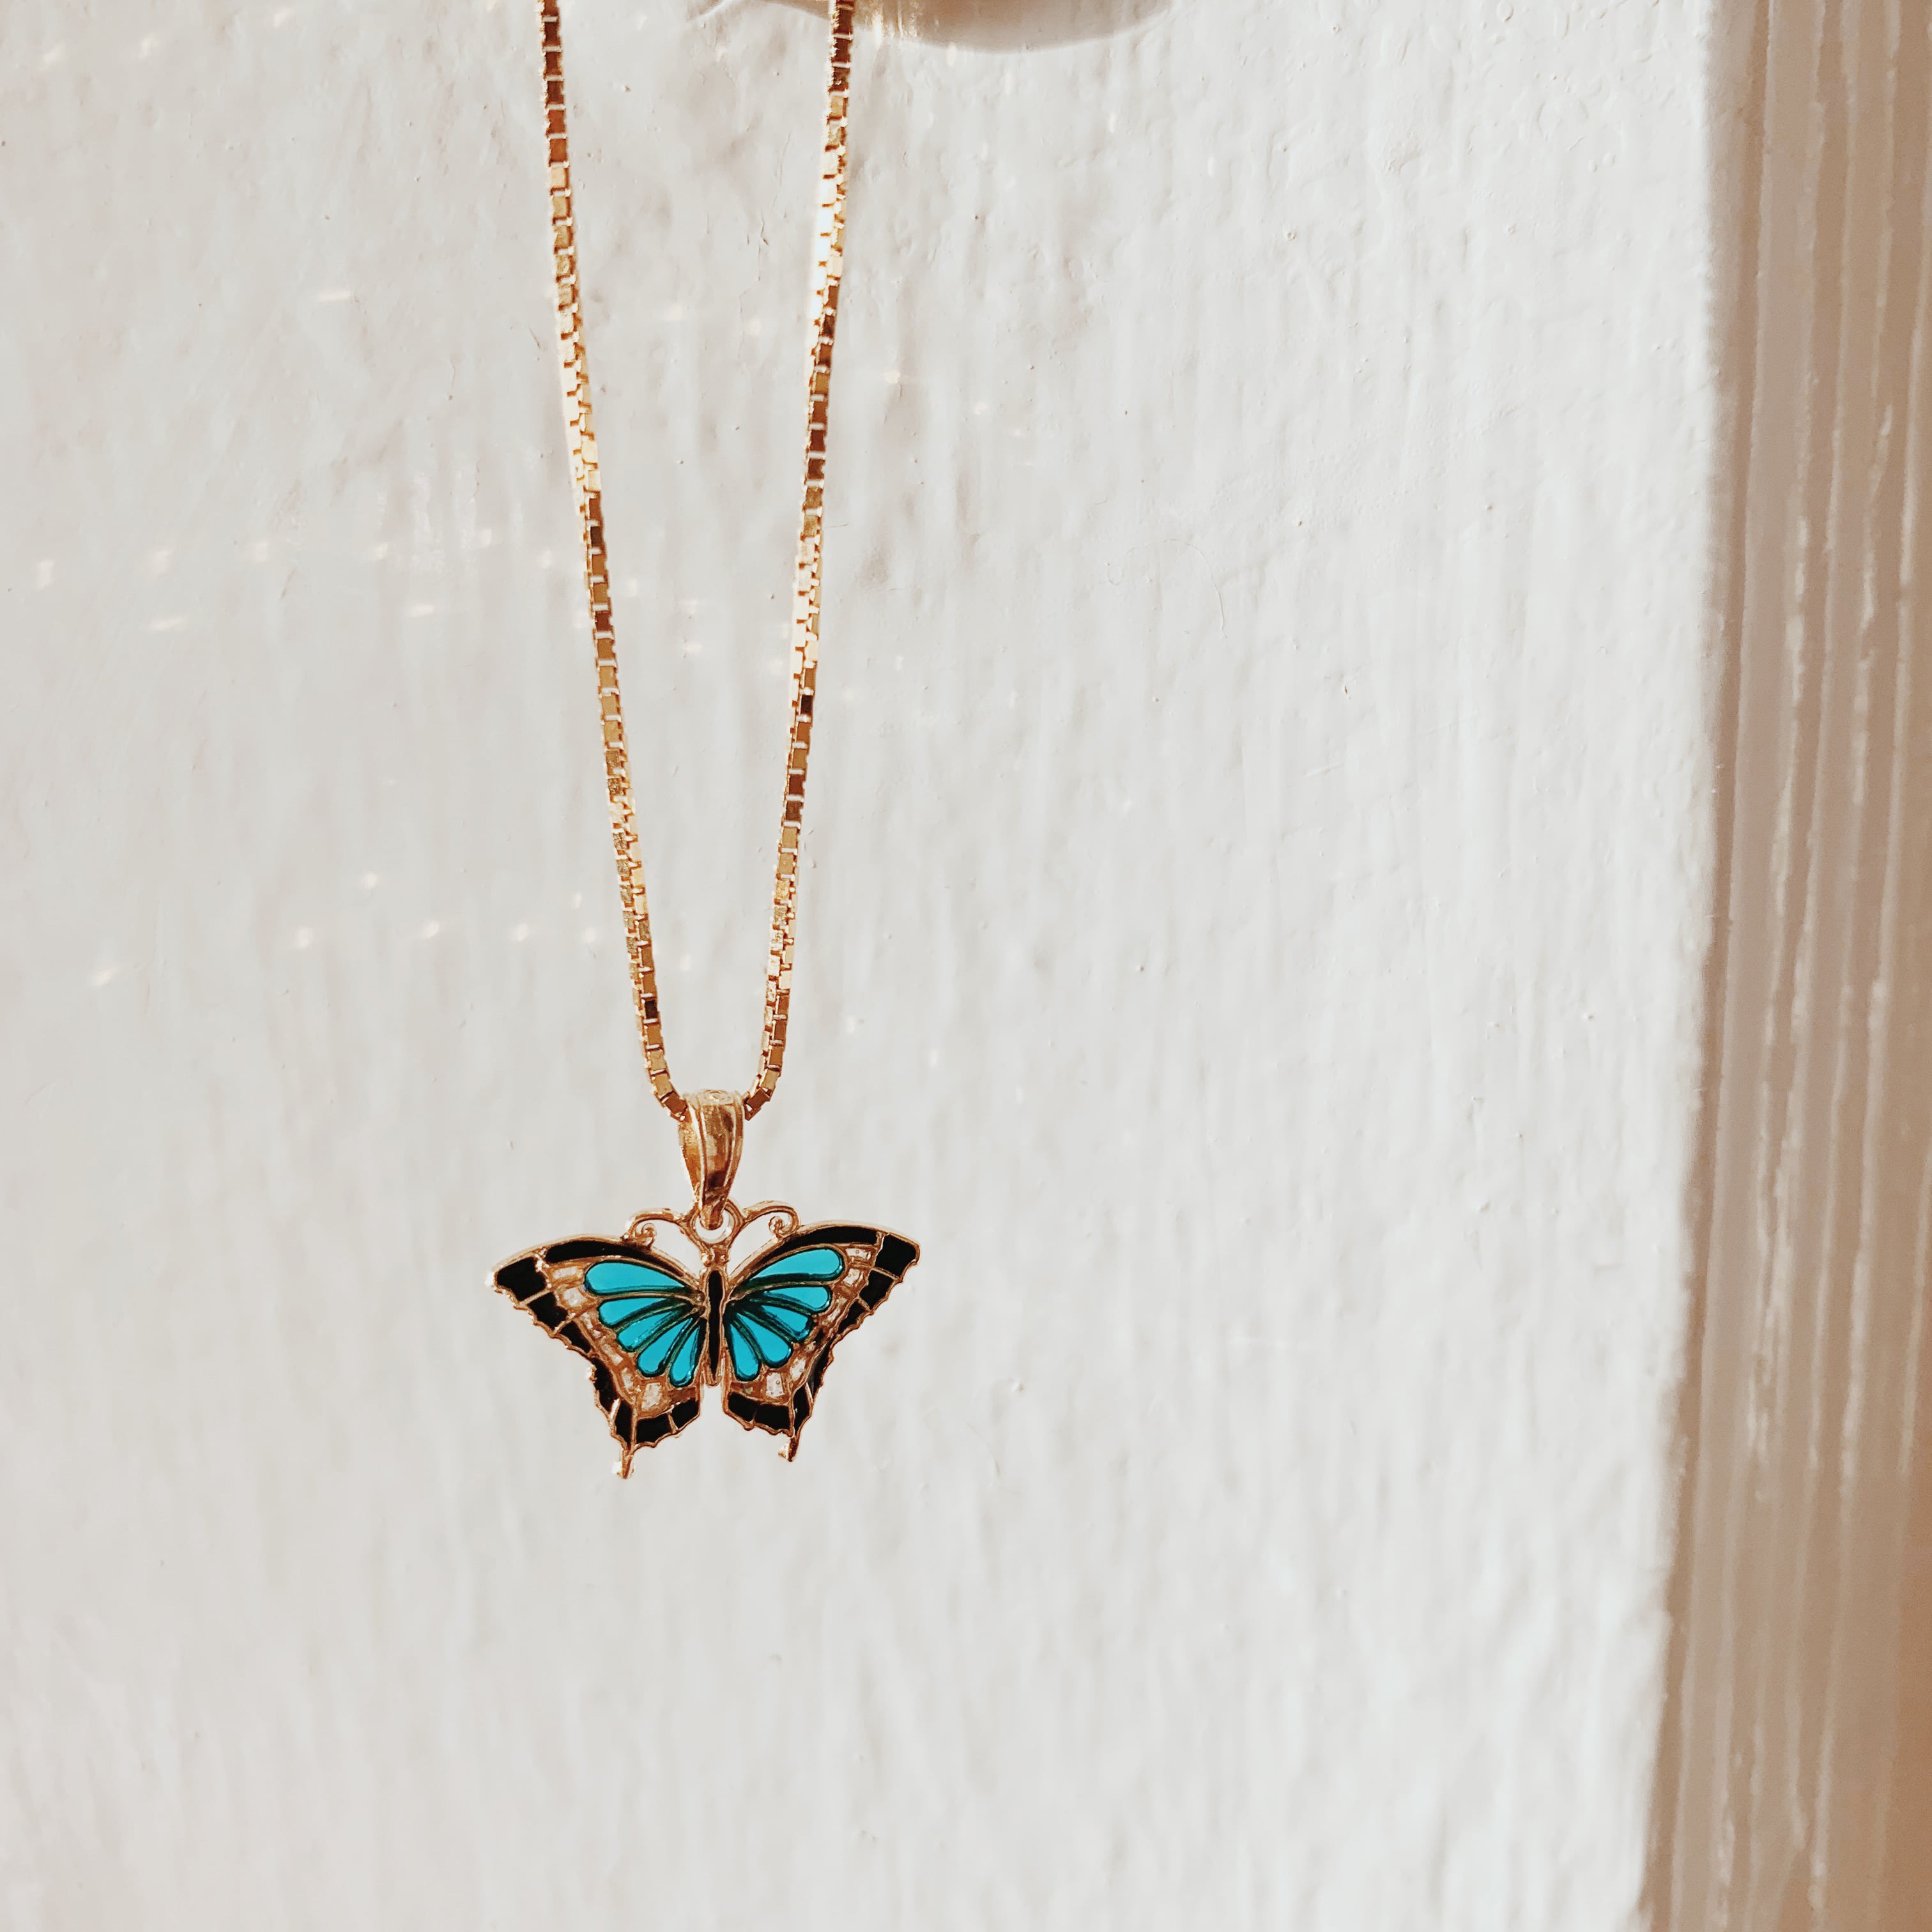 14K Small Aqua Blue Enameled Wings Butterfly Charm